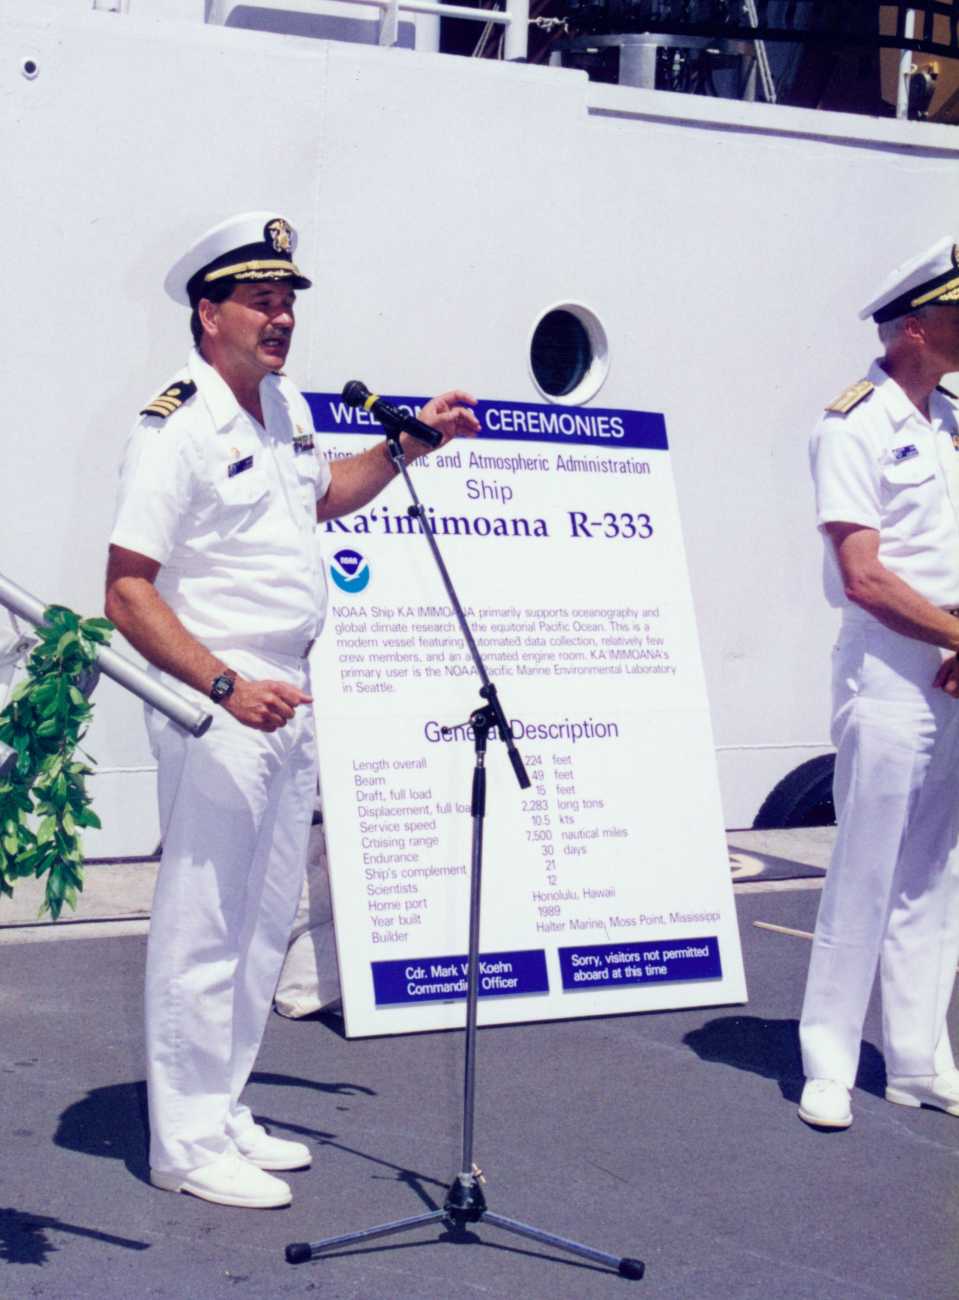 NOAA Ship KA'IMIMOANA at commissioning ceremony